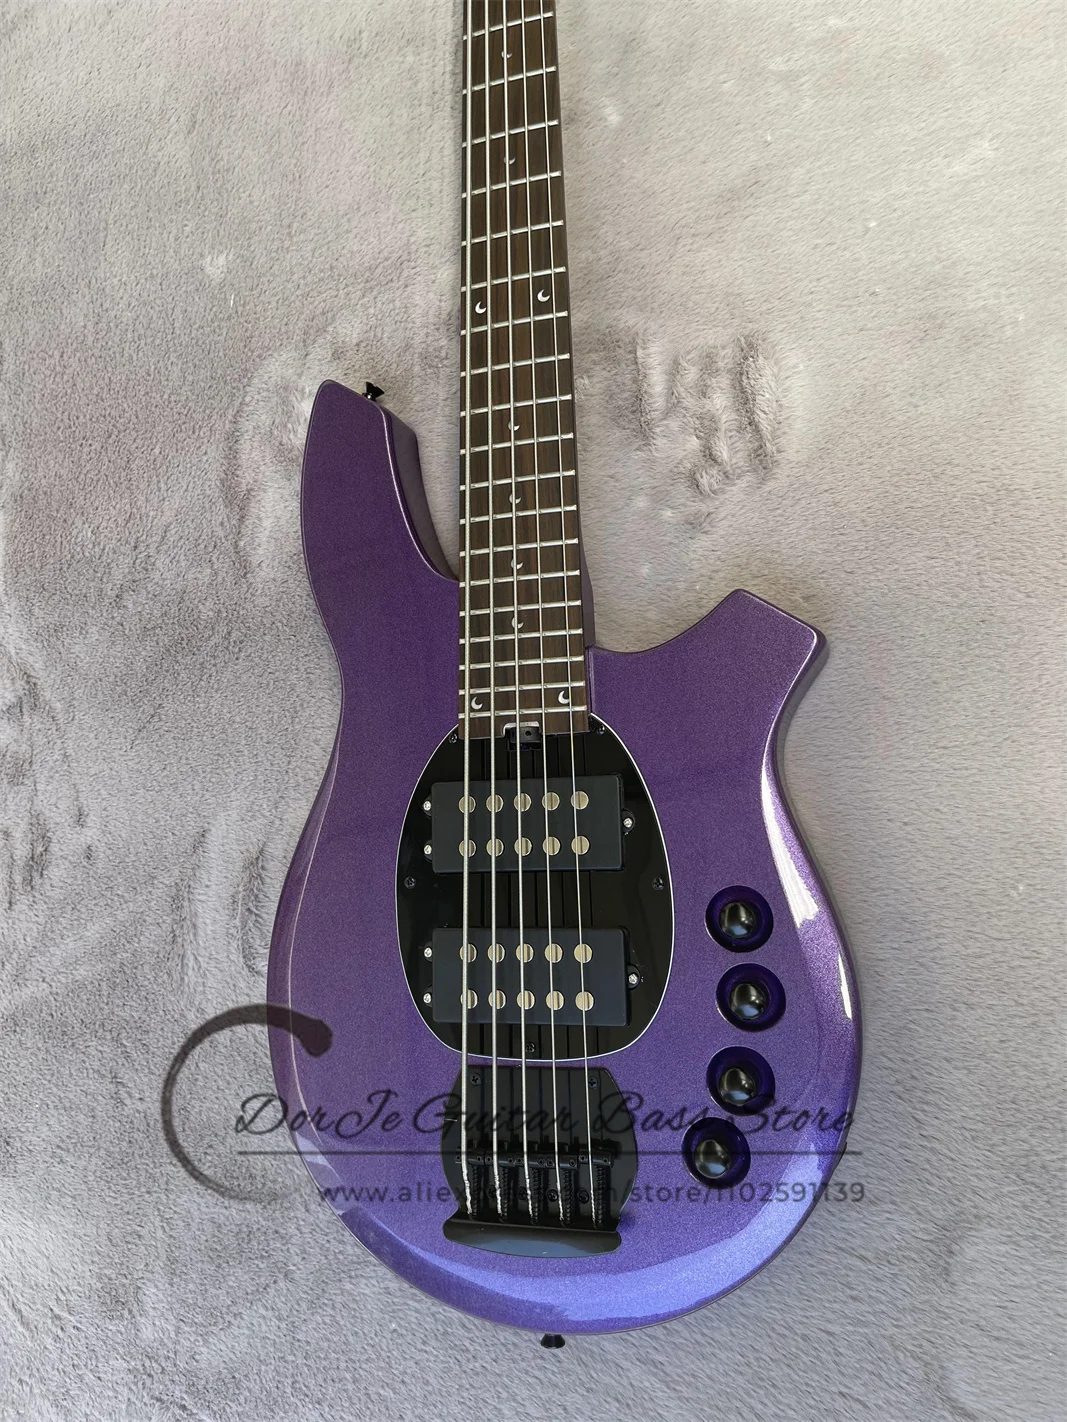 Металлическая фиолетовая бас-гитара Bon Body, накладка из розового дерева, Лунная инкрустация, активная батарея, фиксированный мост, черные тюнеры